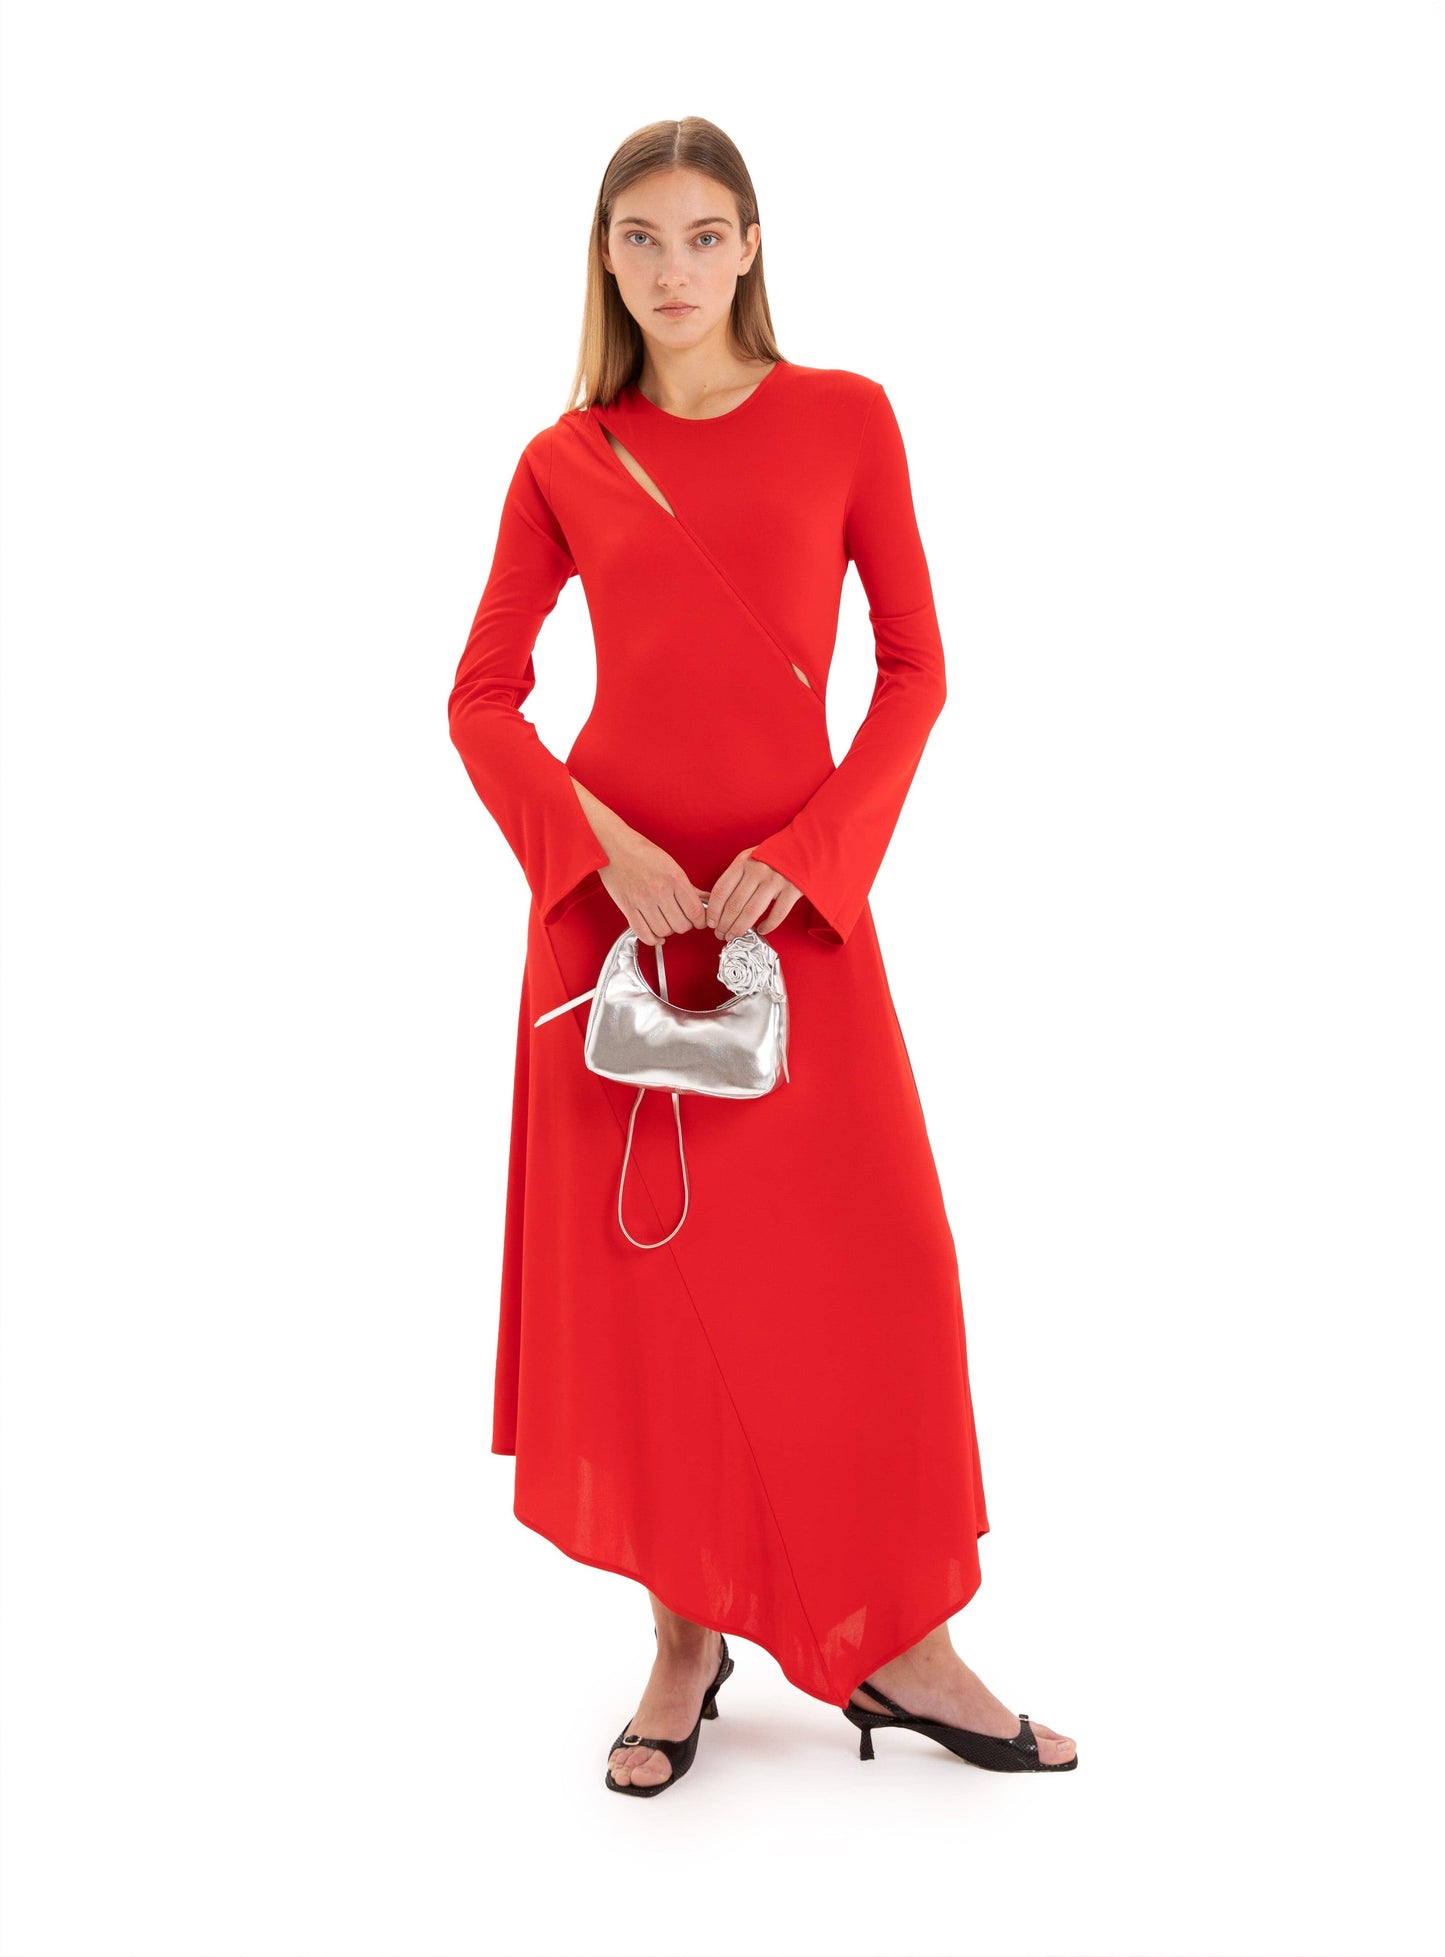 WINONA RED STRETCH DRESS